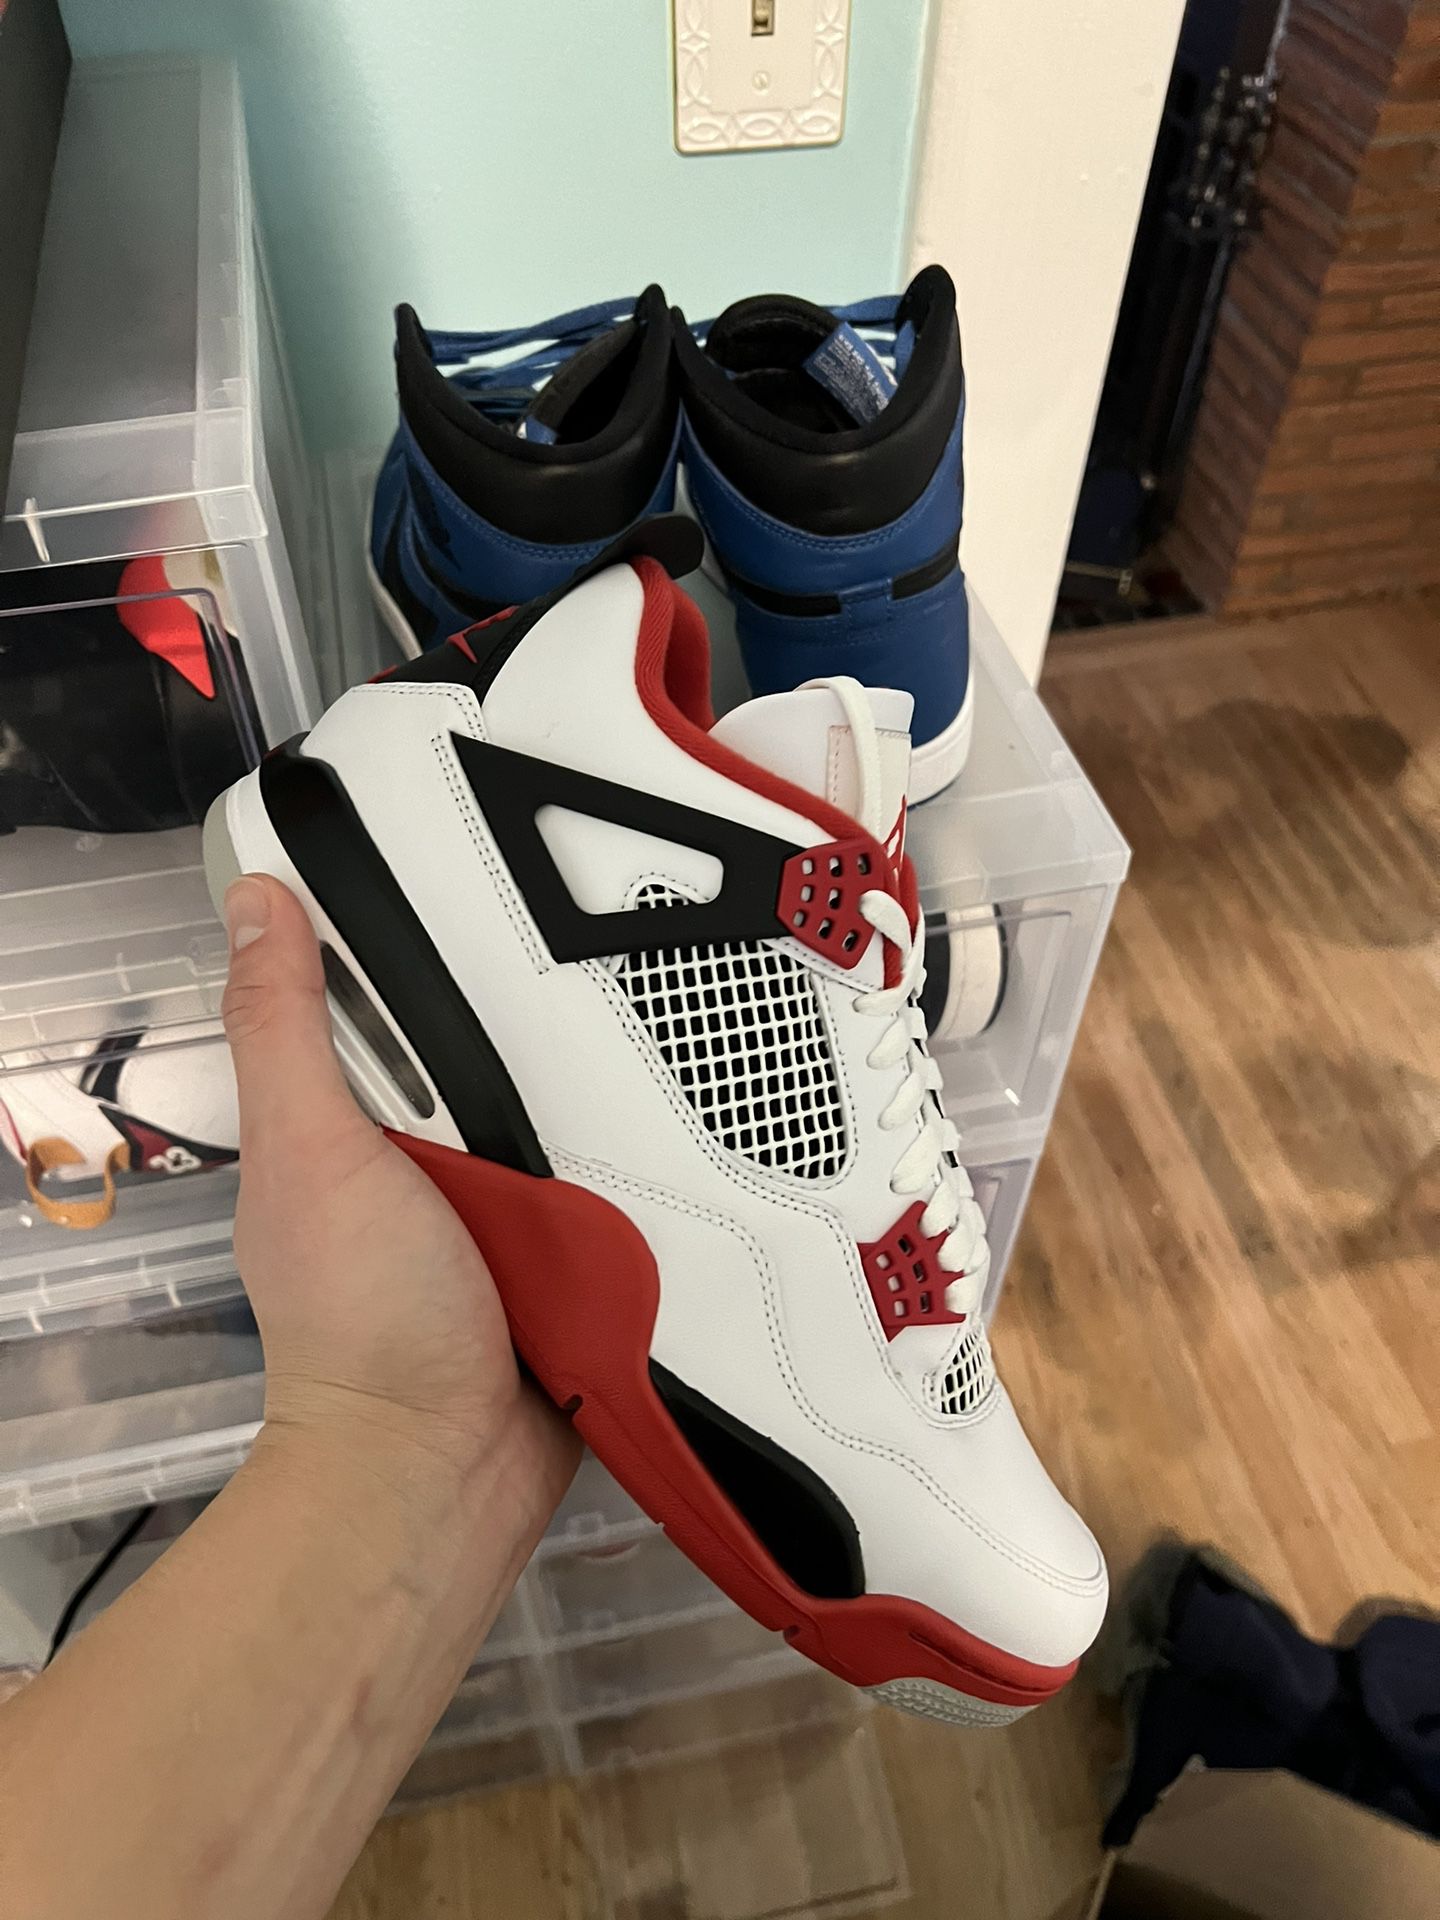 Jordan 4 Fire Red Size 11 